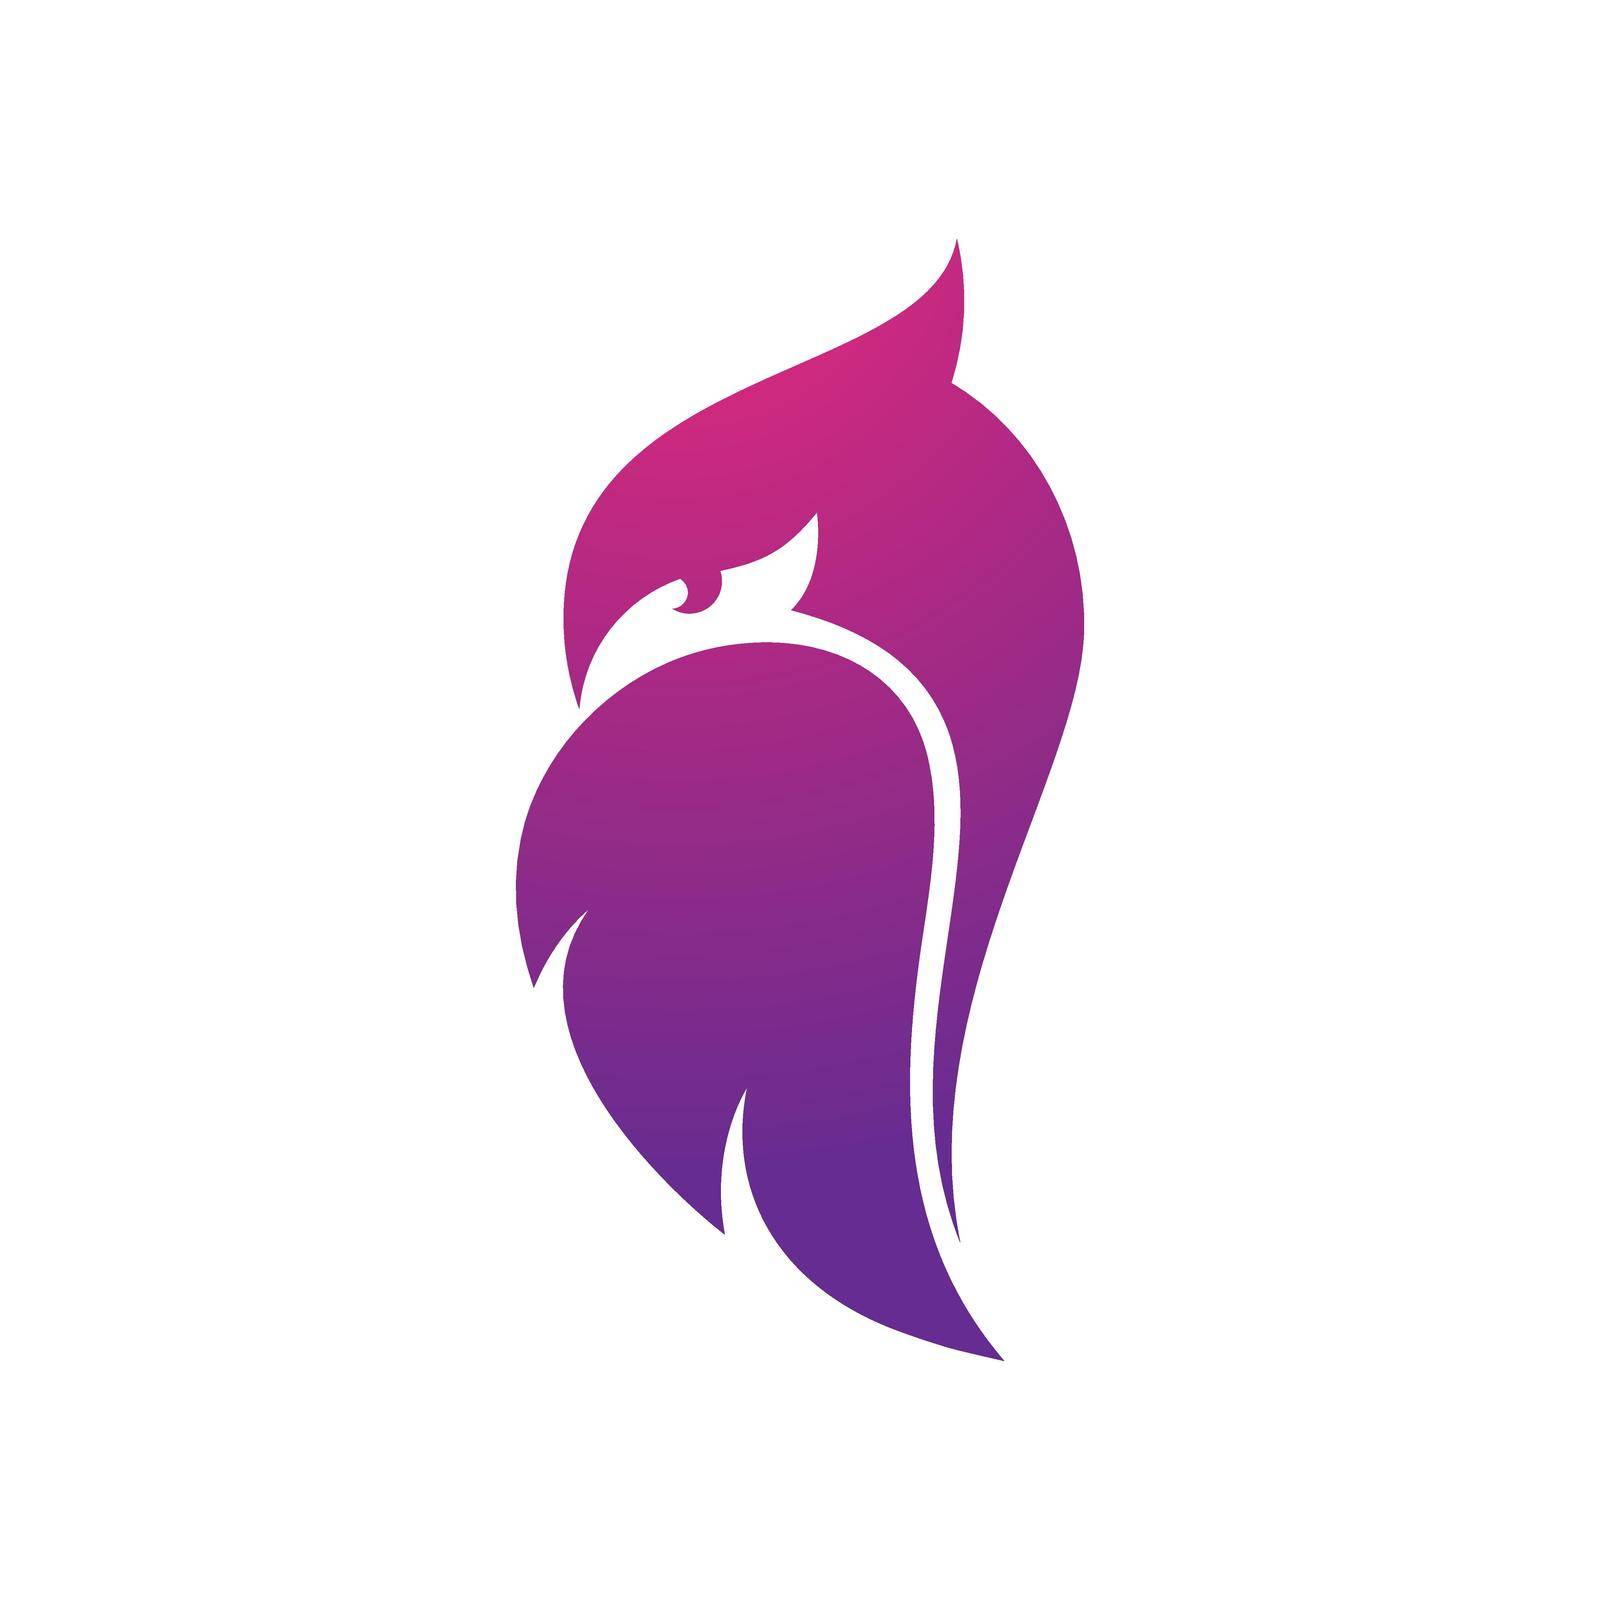 Owl logo vector icon by awk